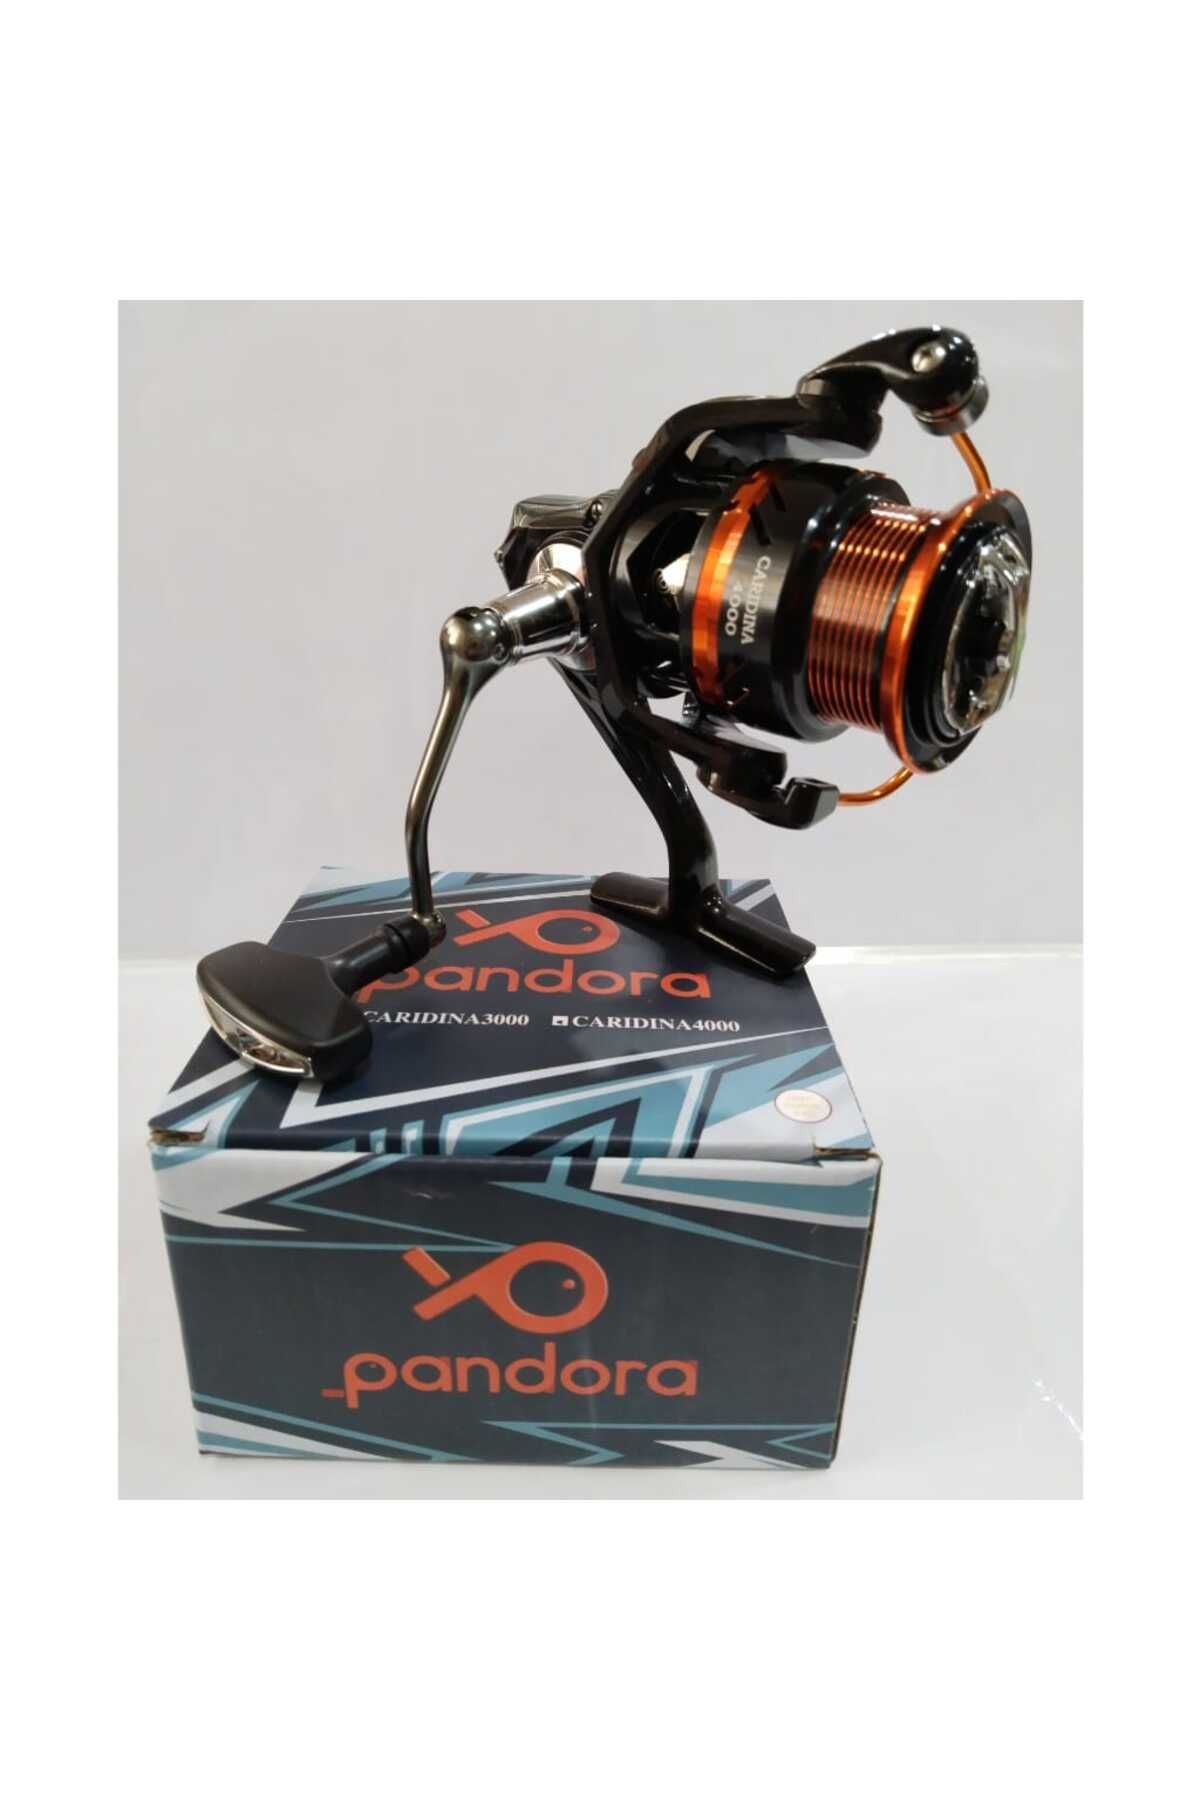 Pandora Caridina 4000 Olta Makinası 5+1 Bilyalı